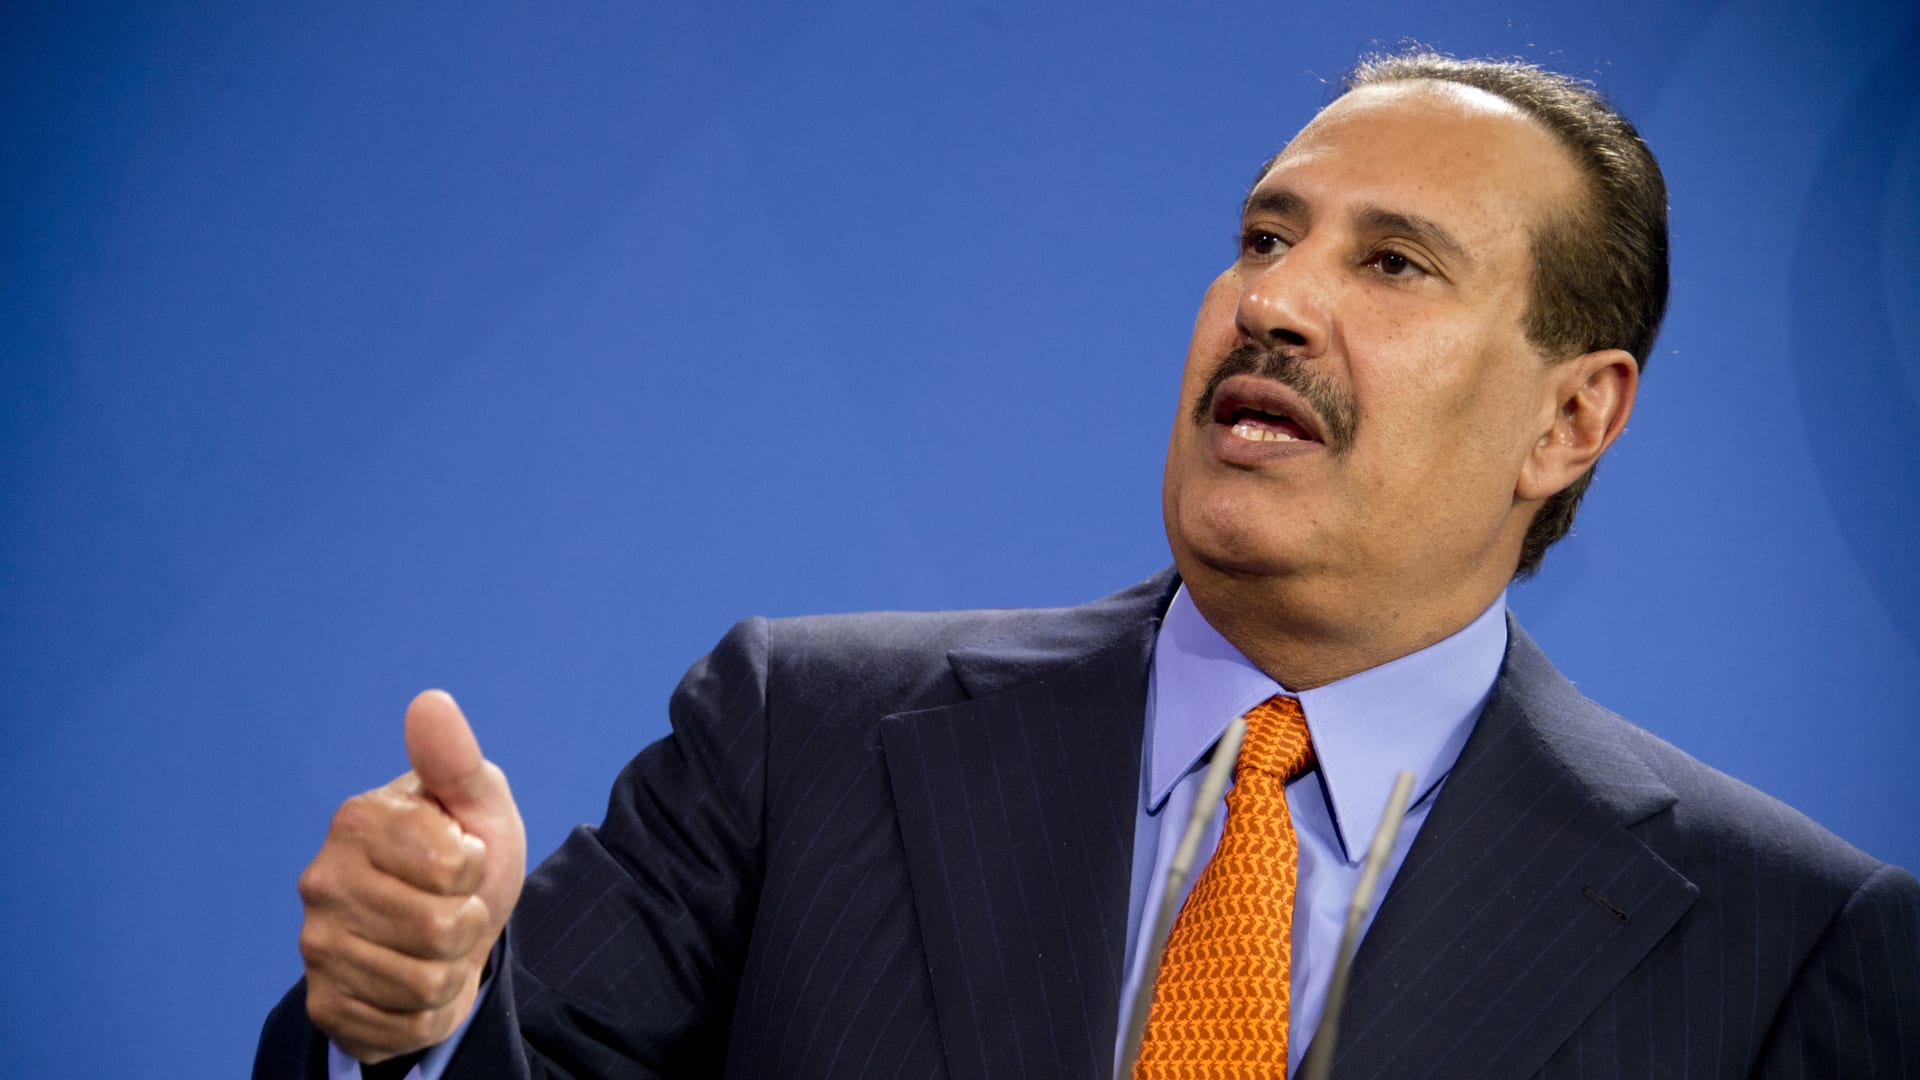 حمد بن جاسم يتهم دولة عربية وإسرائيل بالتسبب بأحداث السودان